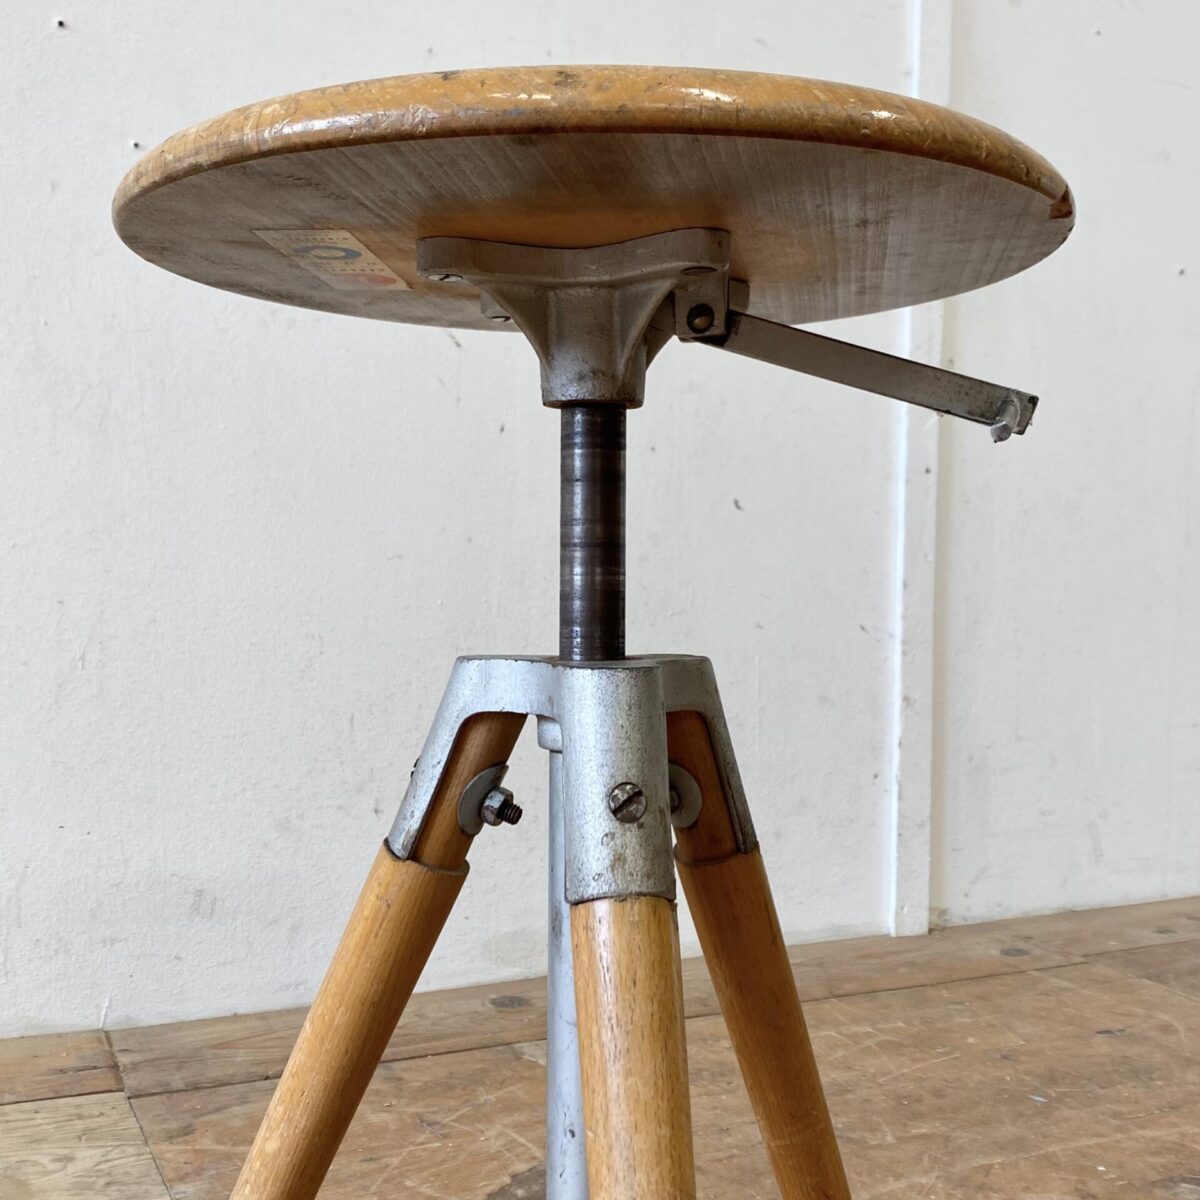 Deuxieme.shop Schweizer Werkstatt Hocker von Girsberger aus den 60er Jahren. Durchmesser 35cm Höhe 47-64cm. Der Stuhl ist in stabilem Zustand, die Mechanik funktioniert einwandfrei, diverse Schrammen und Alterspatina. 